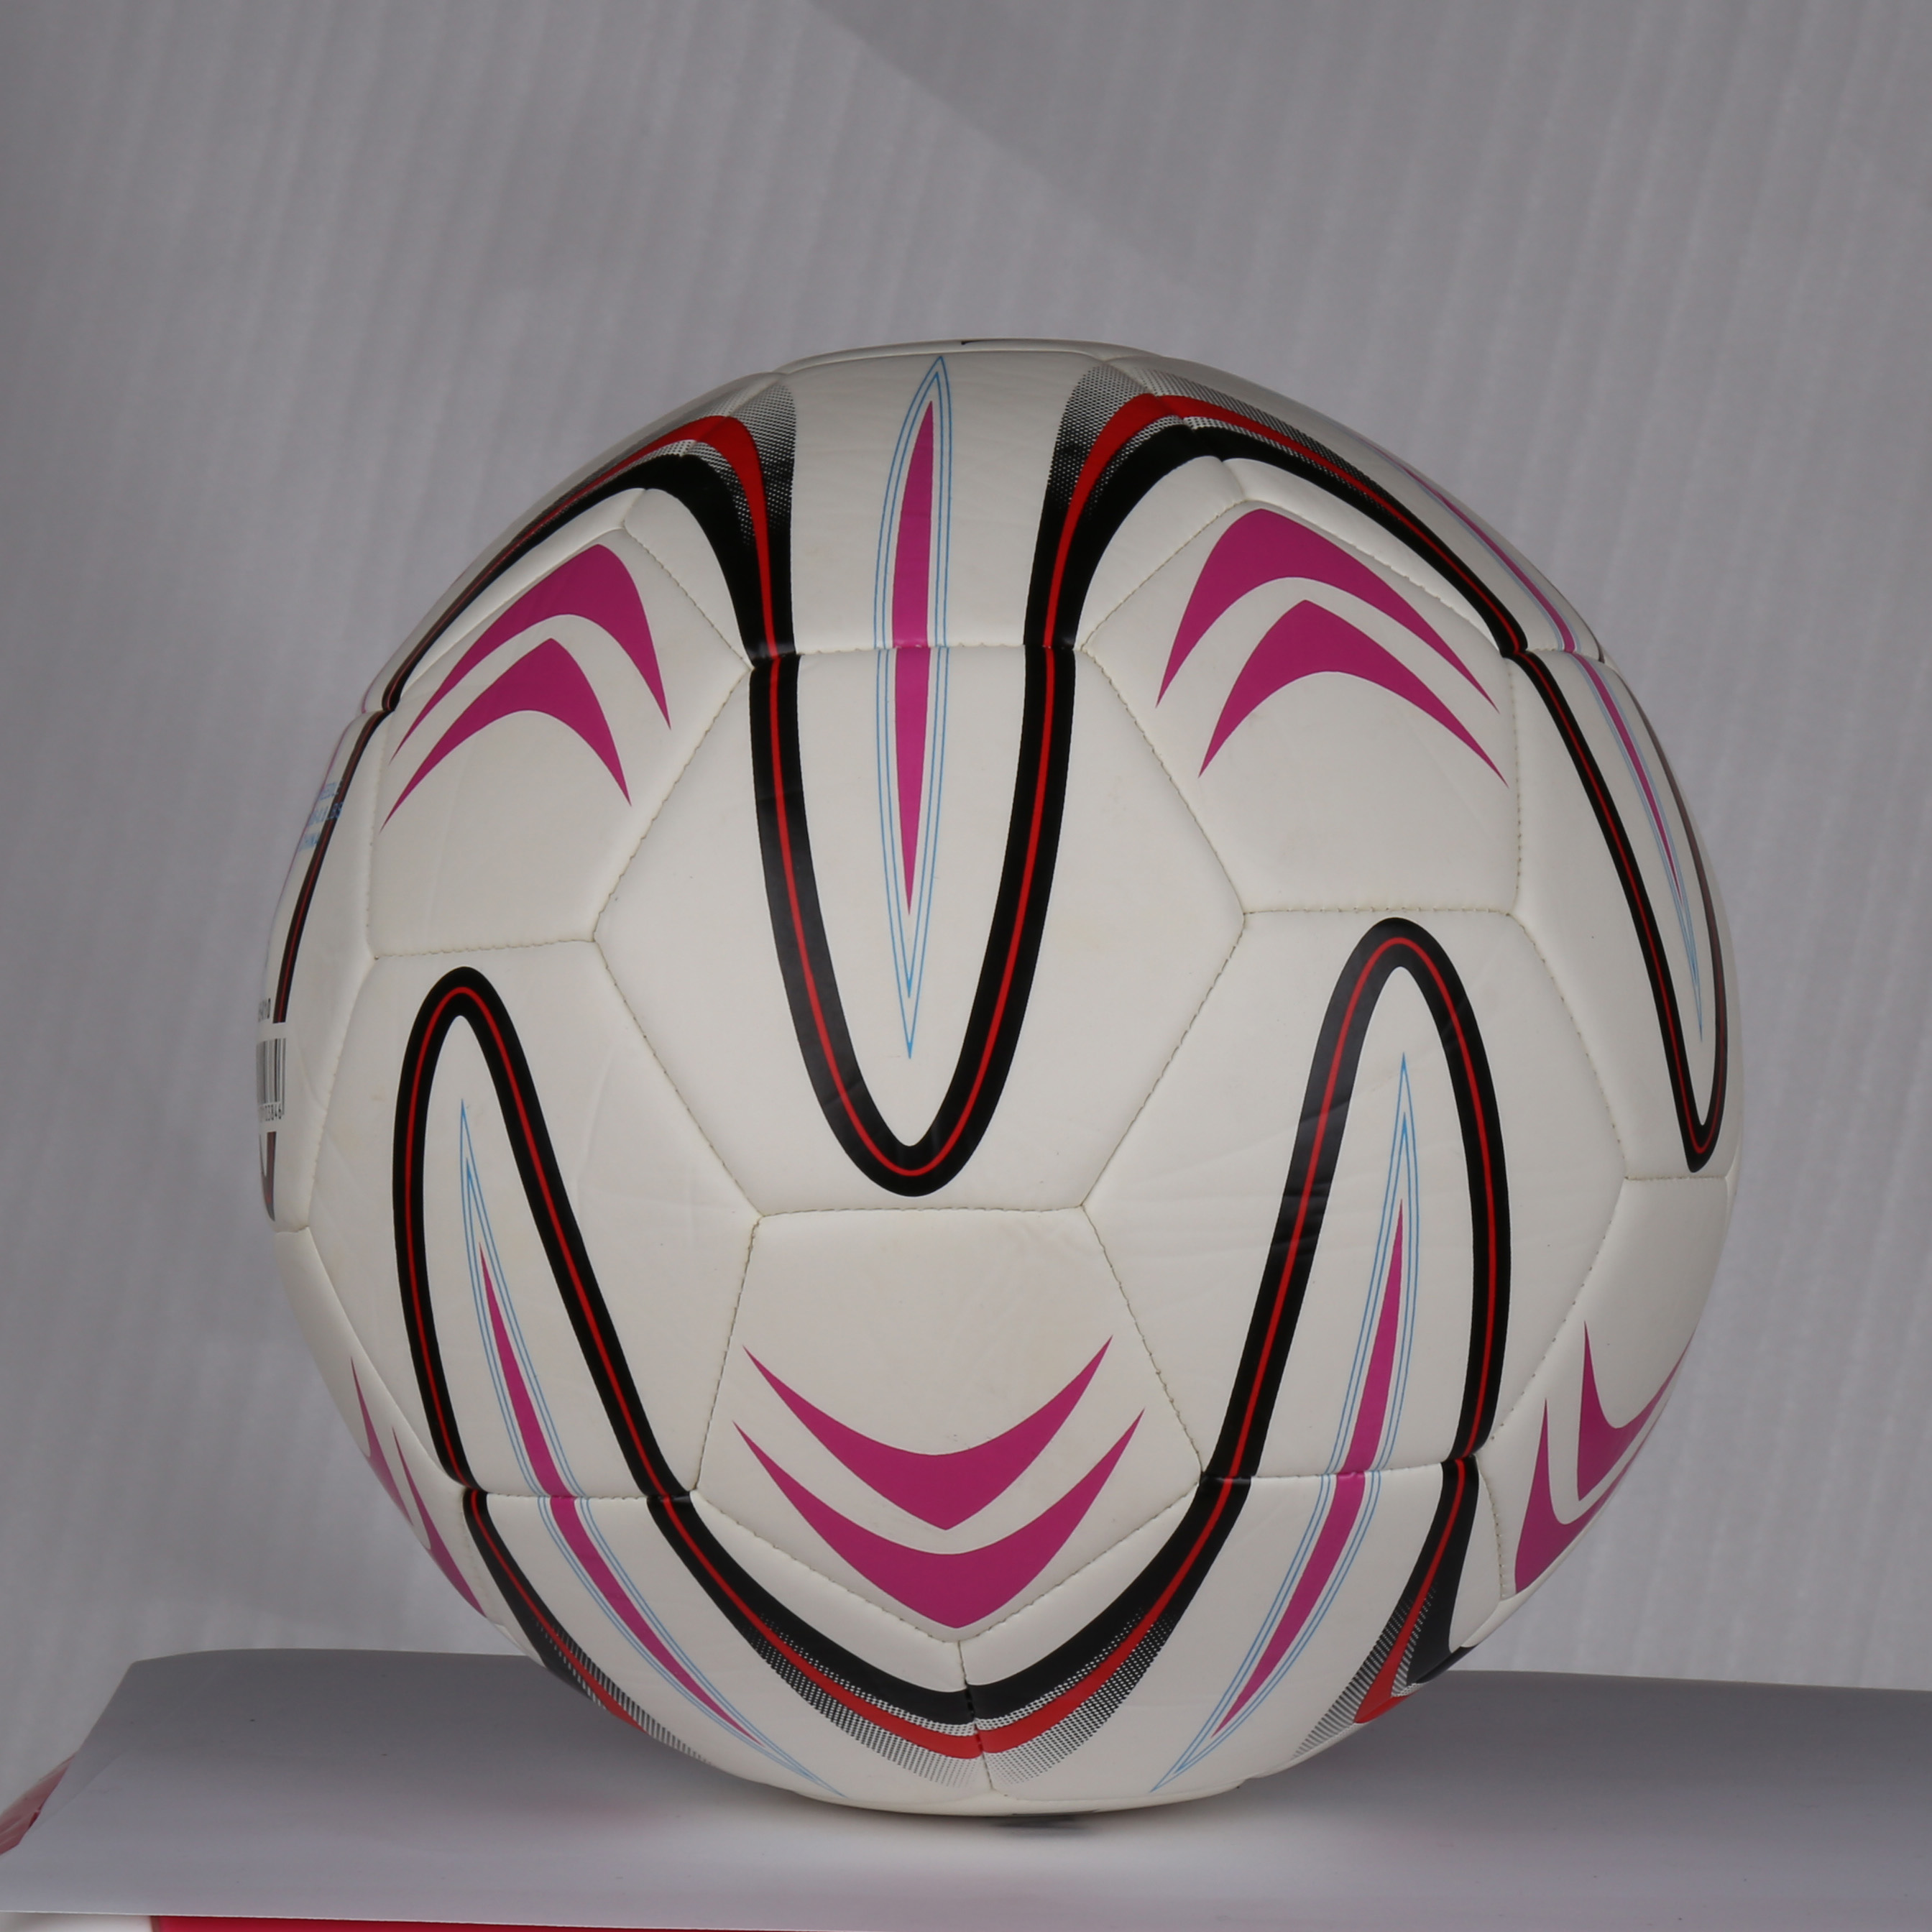 TPU 材质5号机缝足球 布胆 亮面标准比赛训练运动足球批发产品图